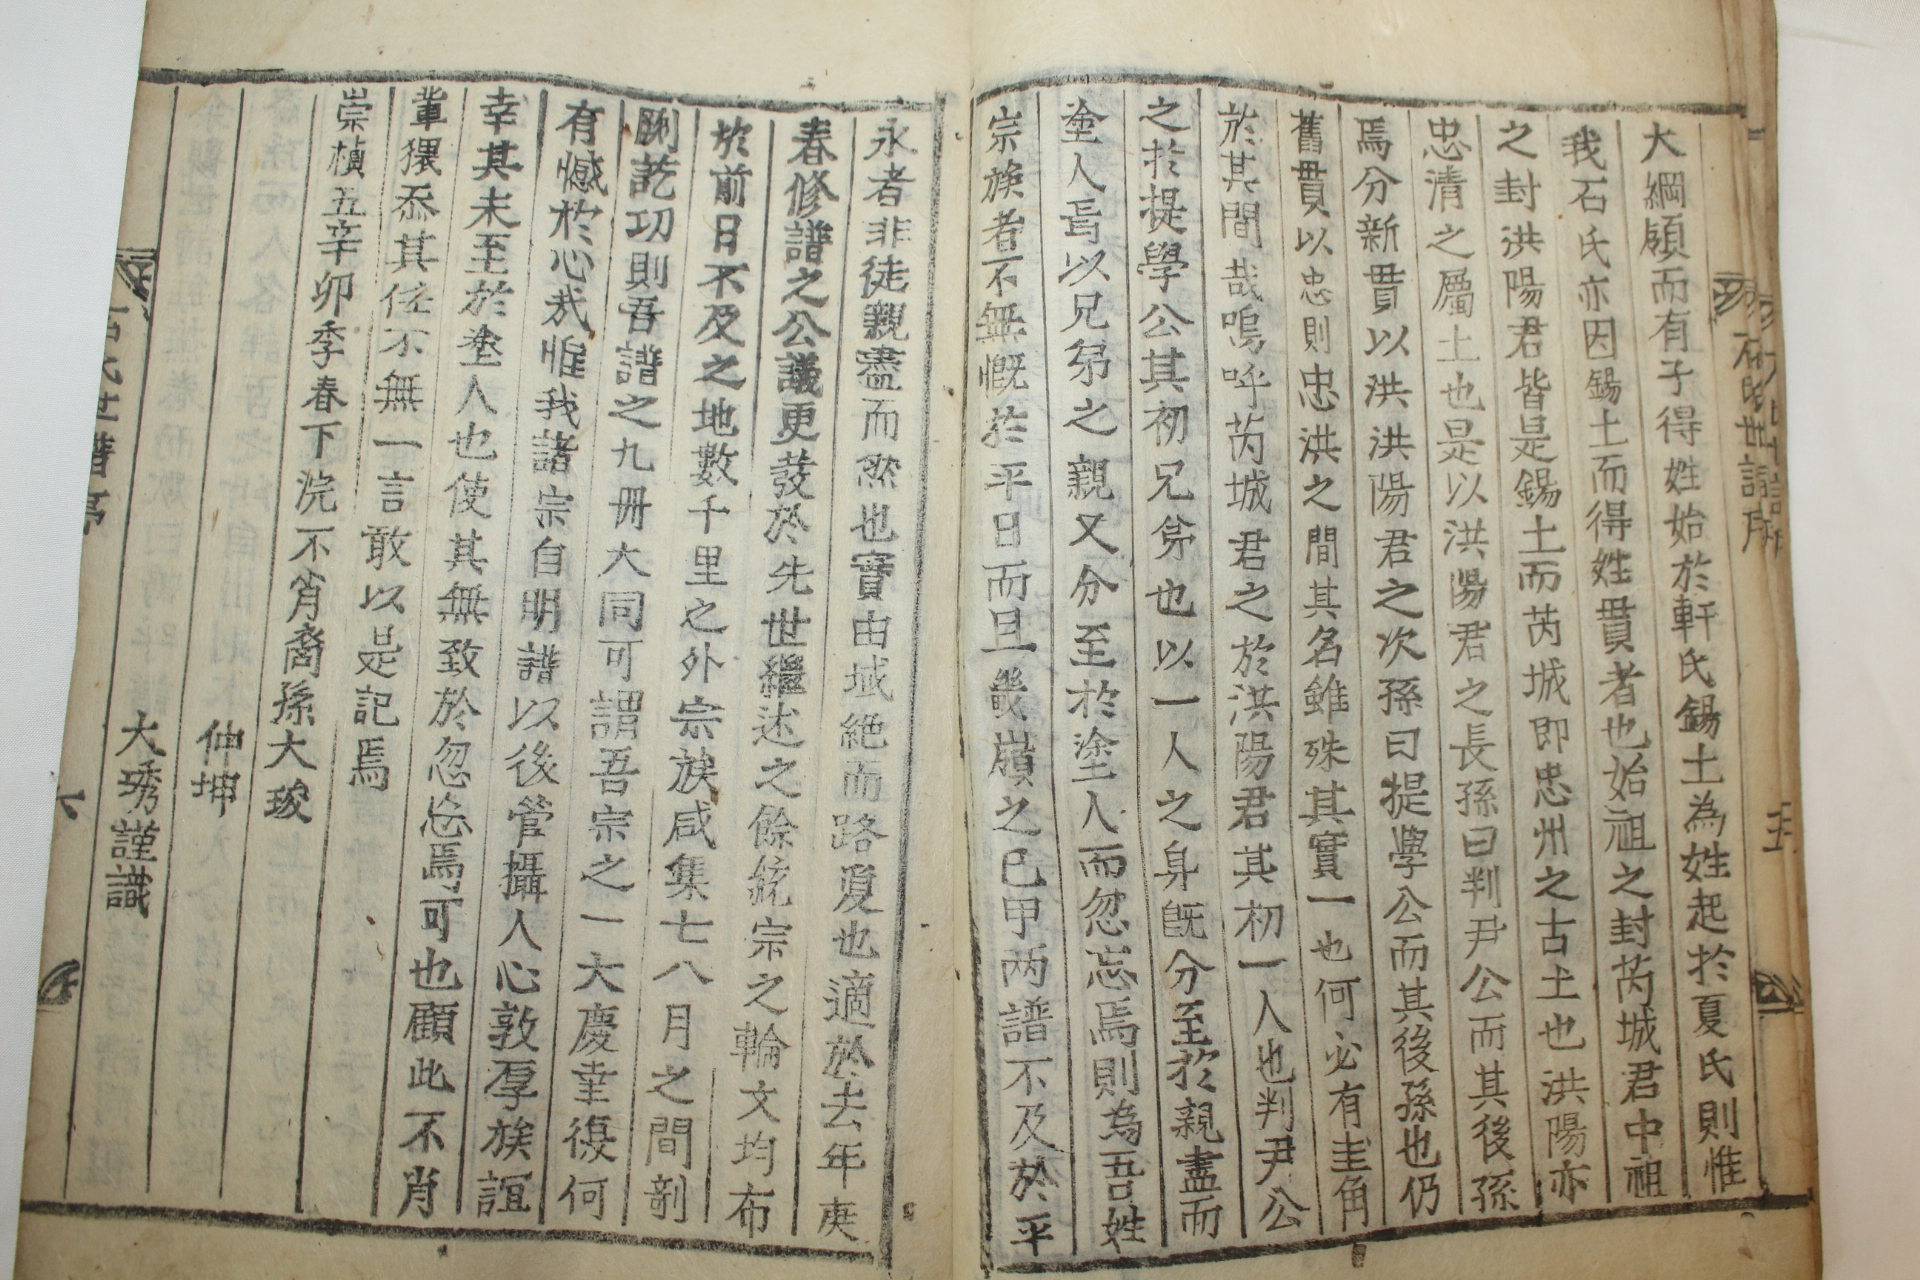 1891년 목활자본 충주석씨세보(忠州石氏世譜) 8책